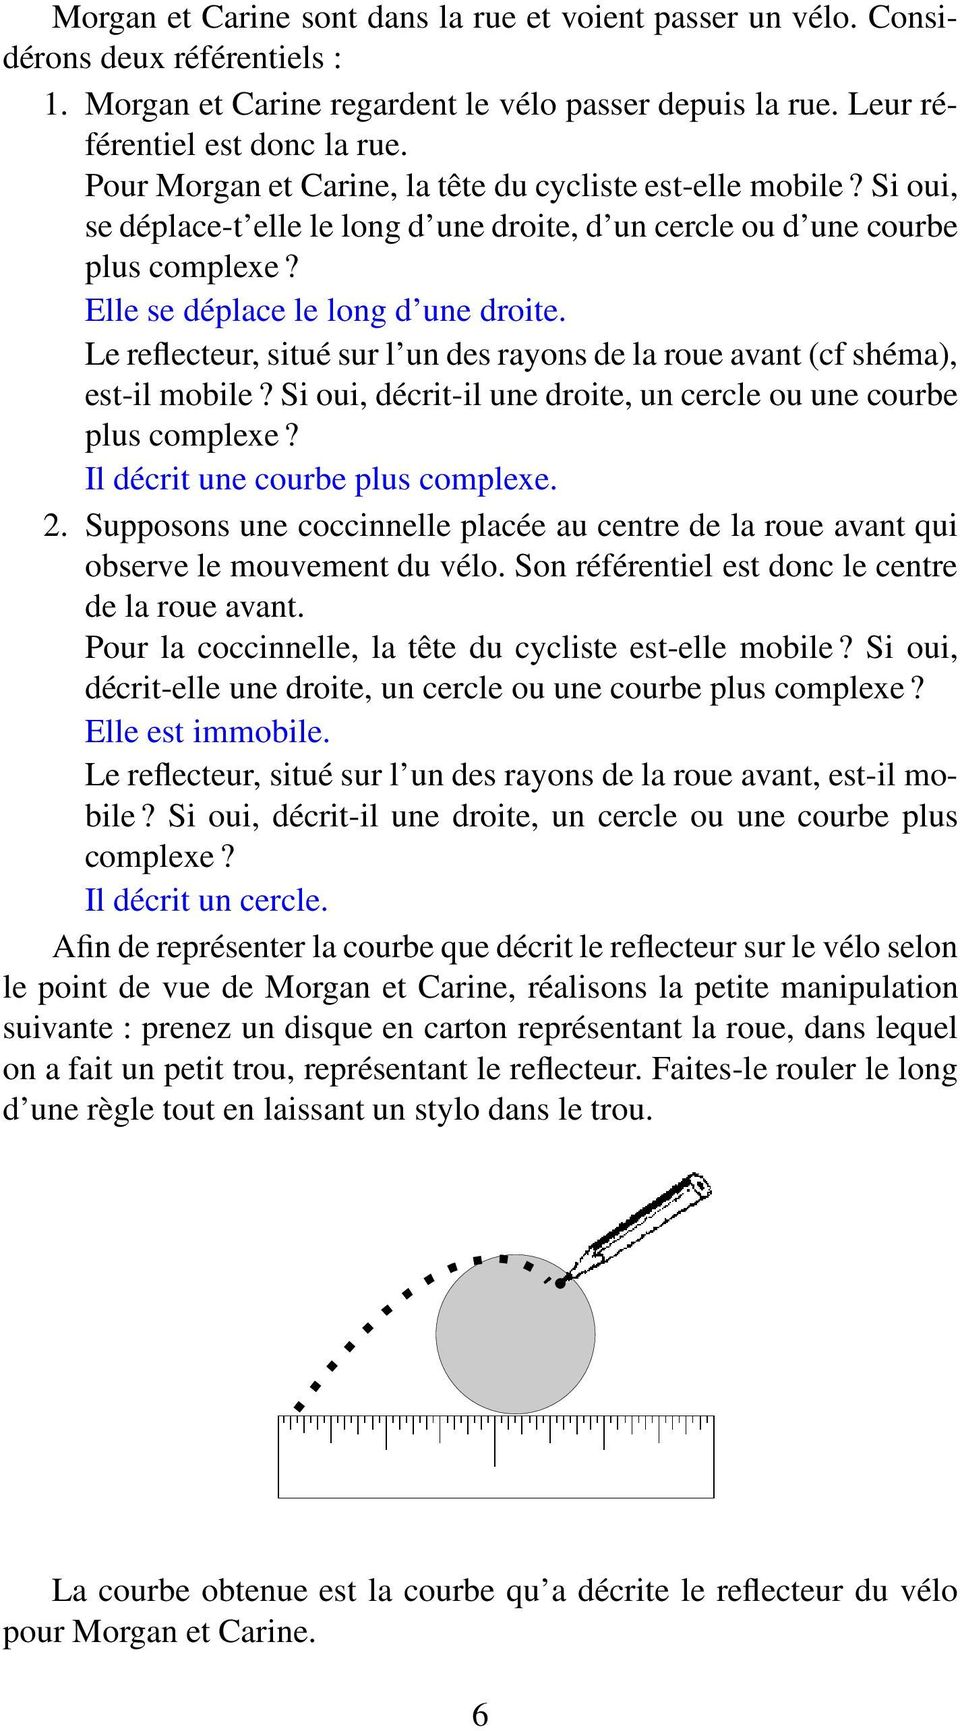 Le reflecteur, situé sur l un des rayons de la roue avant (cf shéma), est-il mobile? Si oui, décrit-il une droite, un cercle ou une courbe plus complexe? Il décrit une courbe plus complexe. 2.